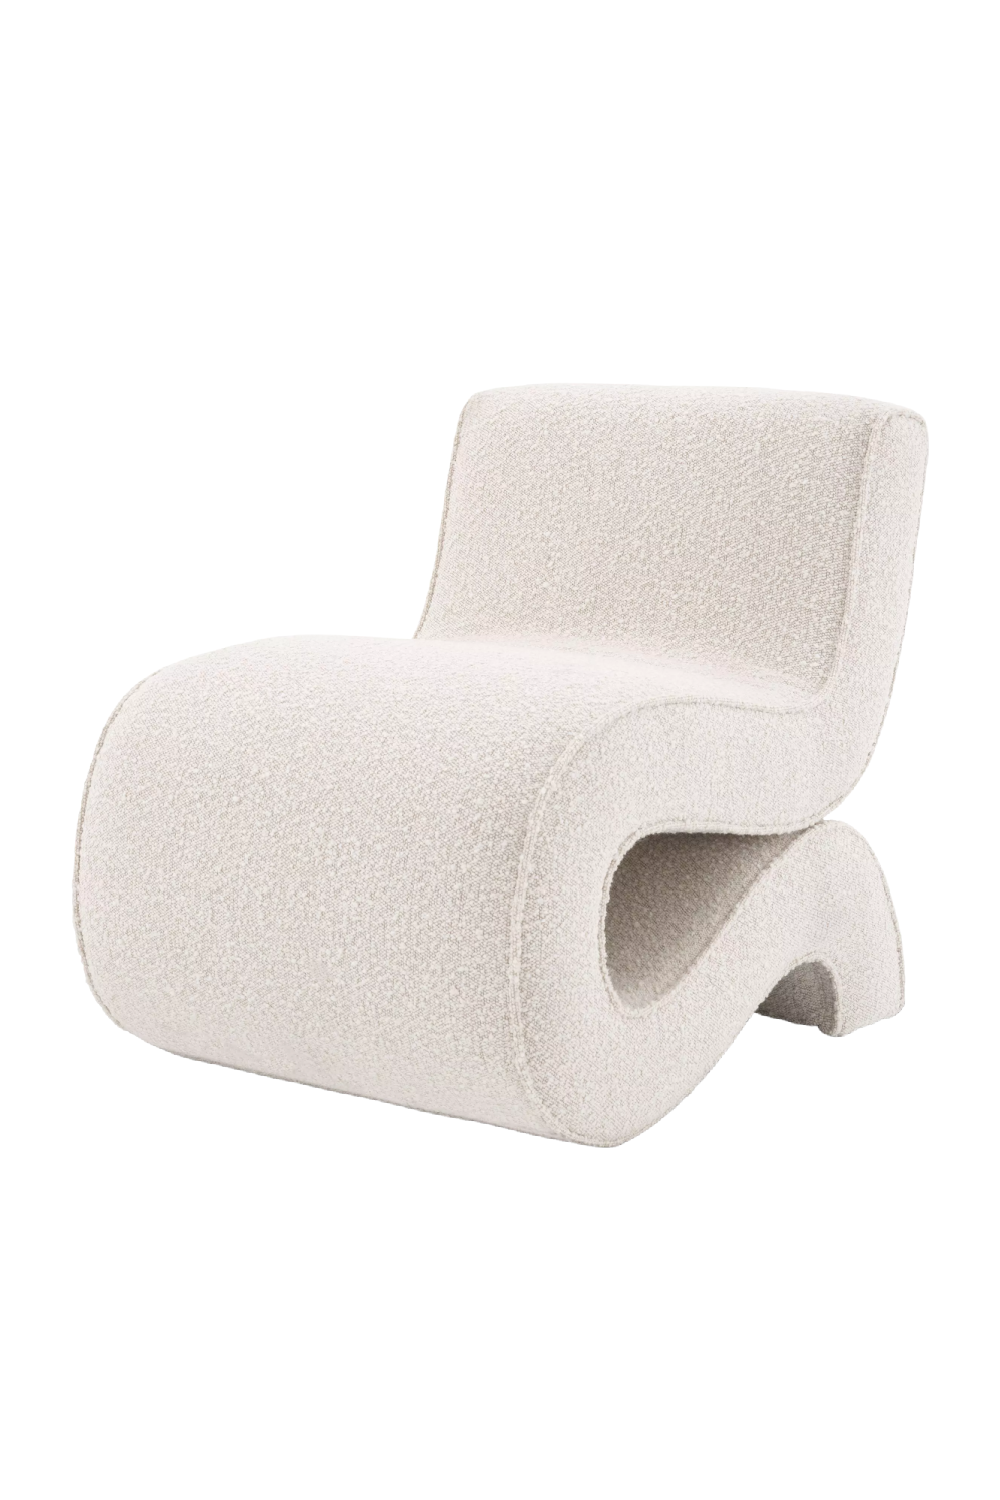 Free-Flowing Bouclé Accent Chair | Eichholtz Bond | Oroa.com